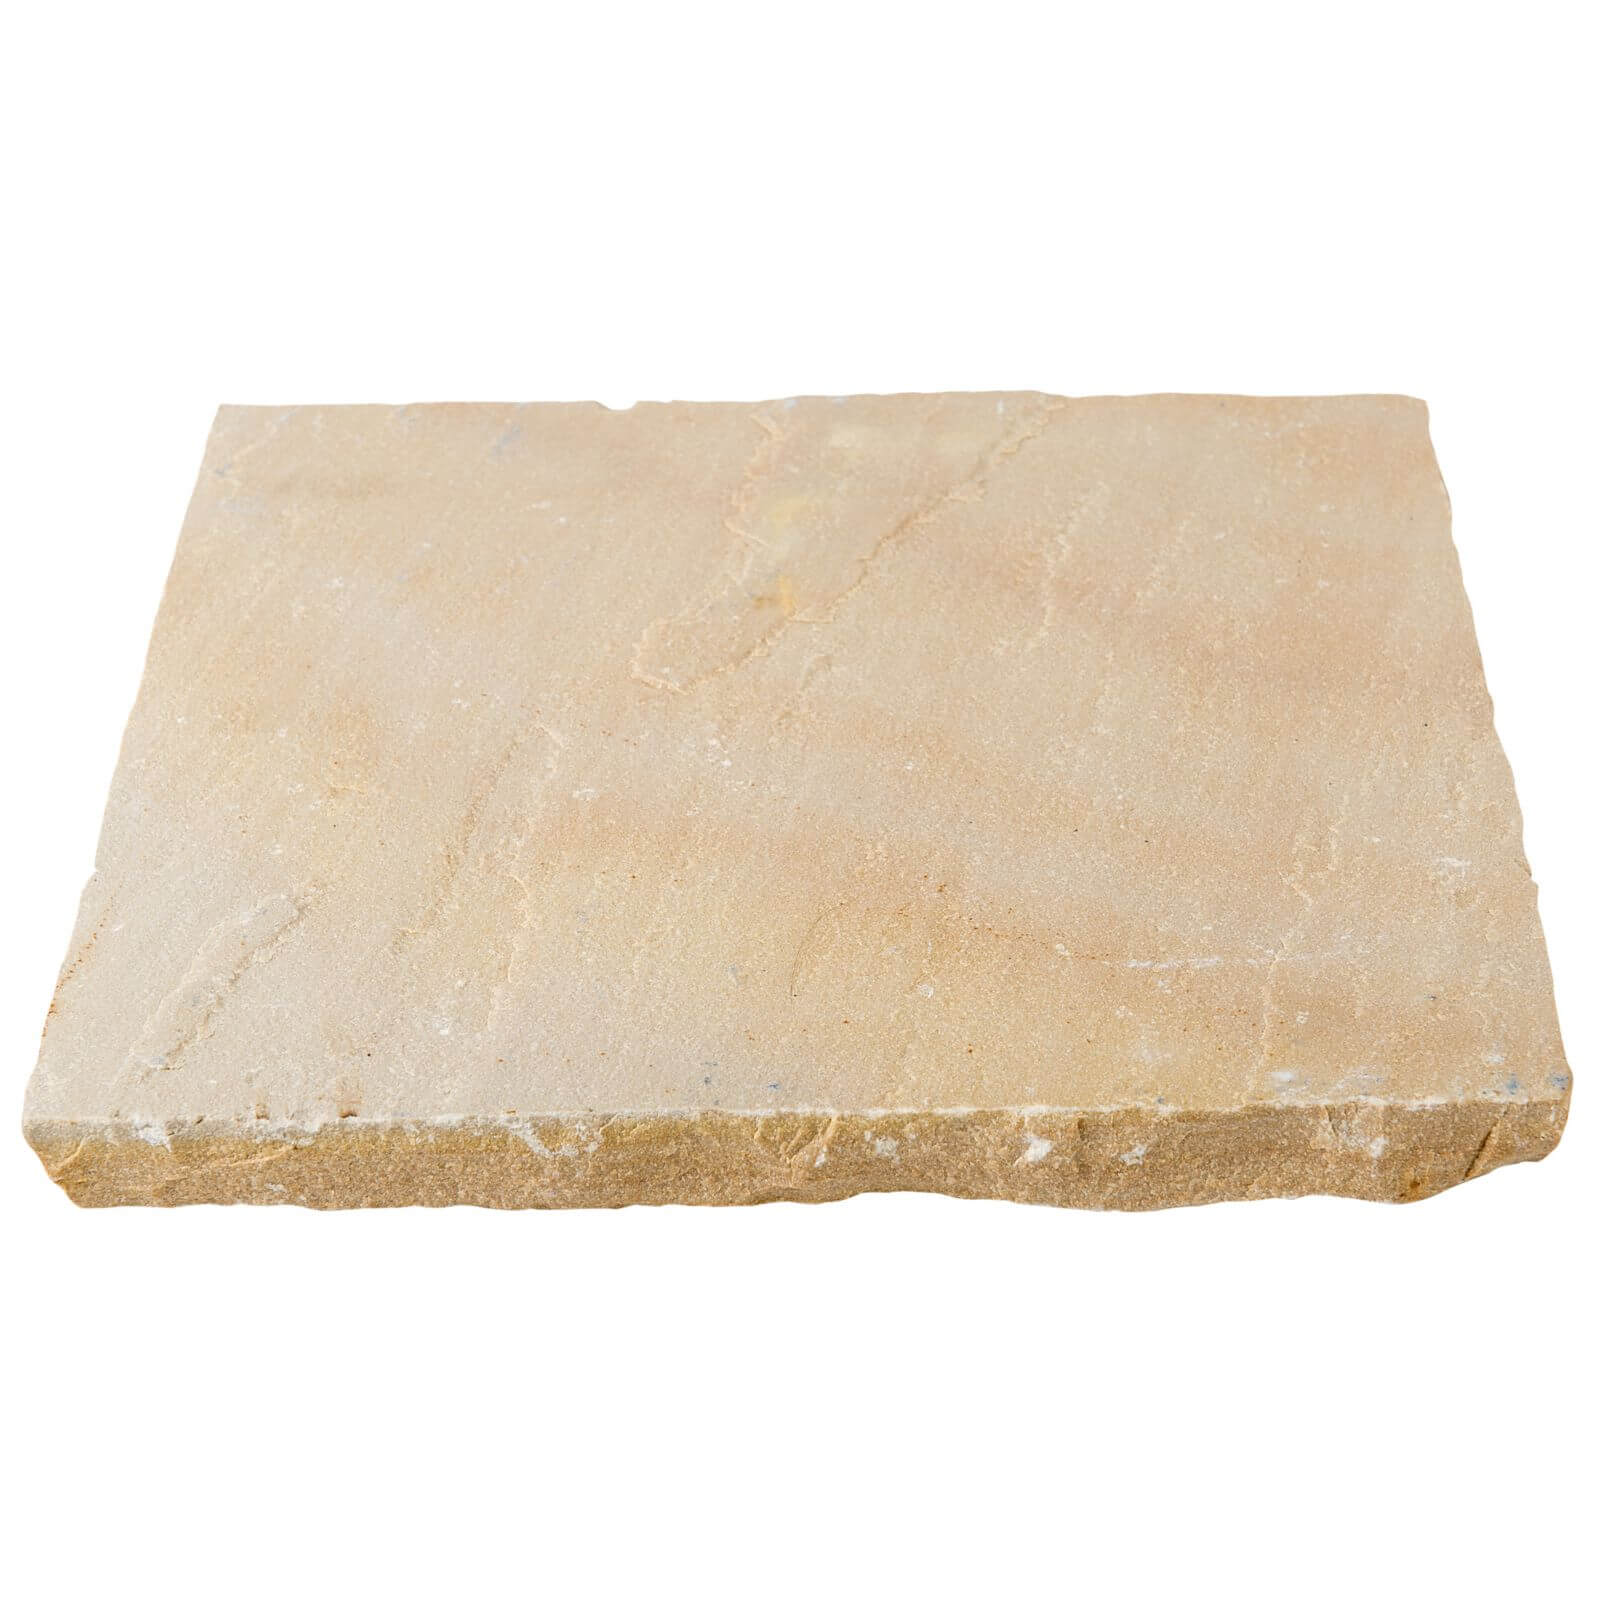 Stylish Stone Natural Sandstone 10.2sq m - Scottish Glen